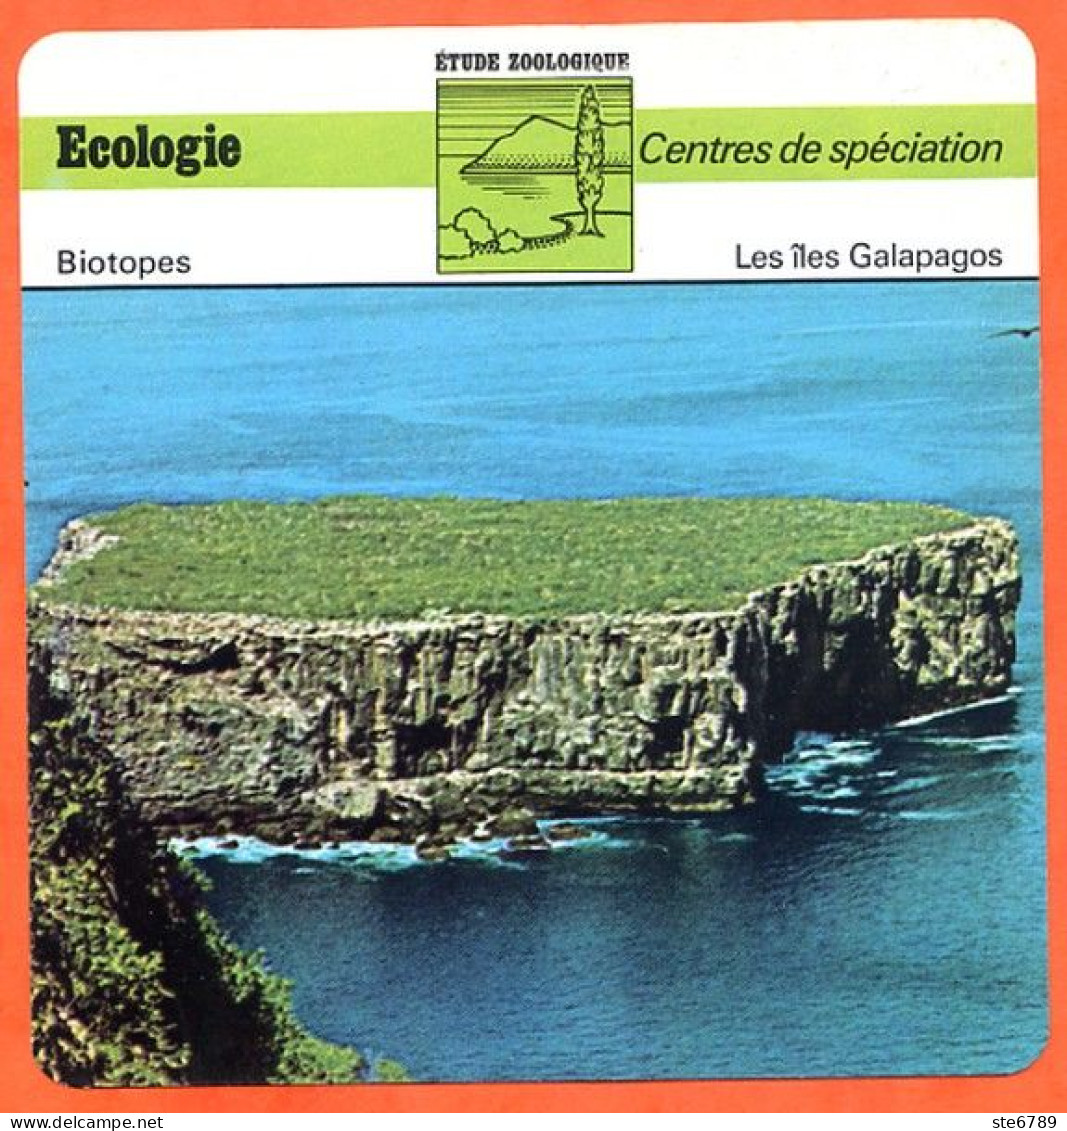 Les Iles Galapagos  Illustration Vue Centres De Spéciation  Etude Zoologique Biotopes Fiche Ecologie - Géographie